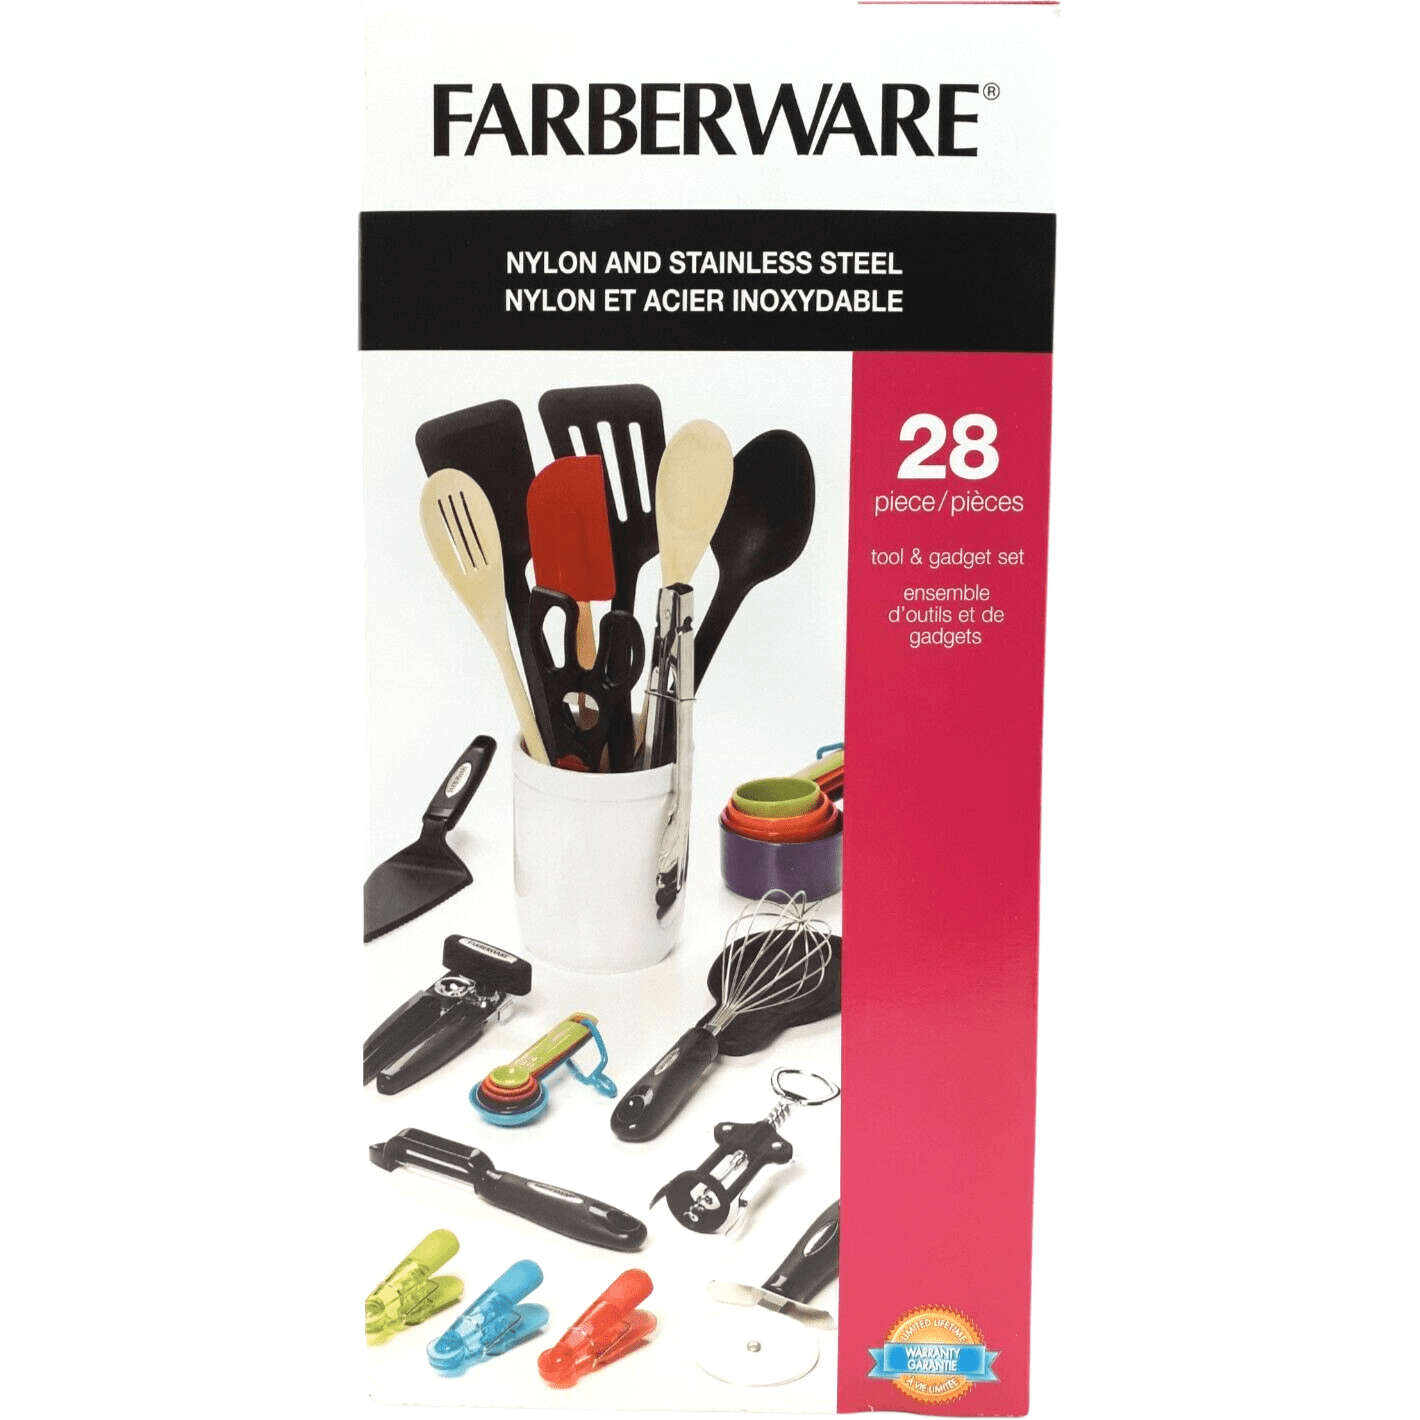 Farberware 28 Piece Kitchen Utensil and Gadget Set